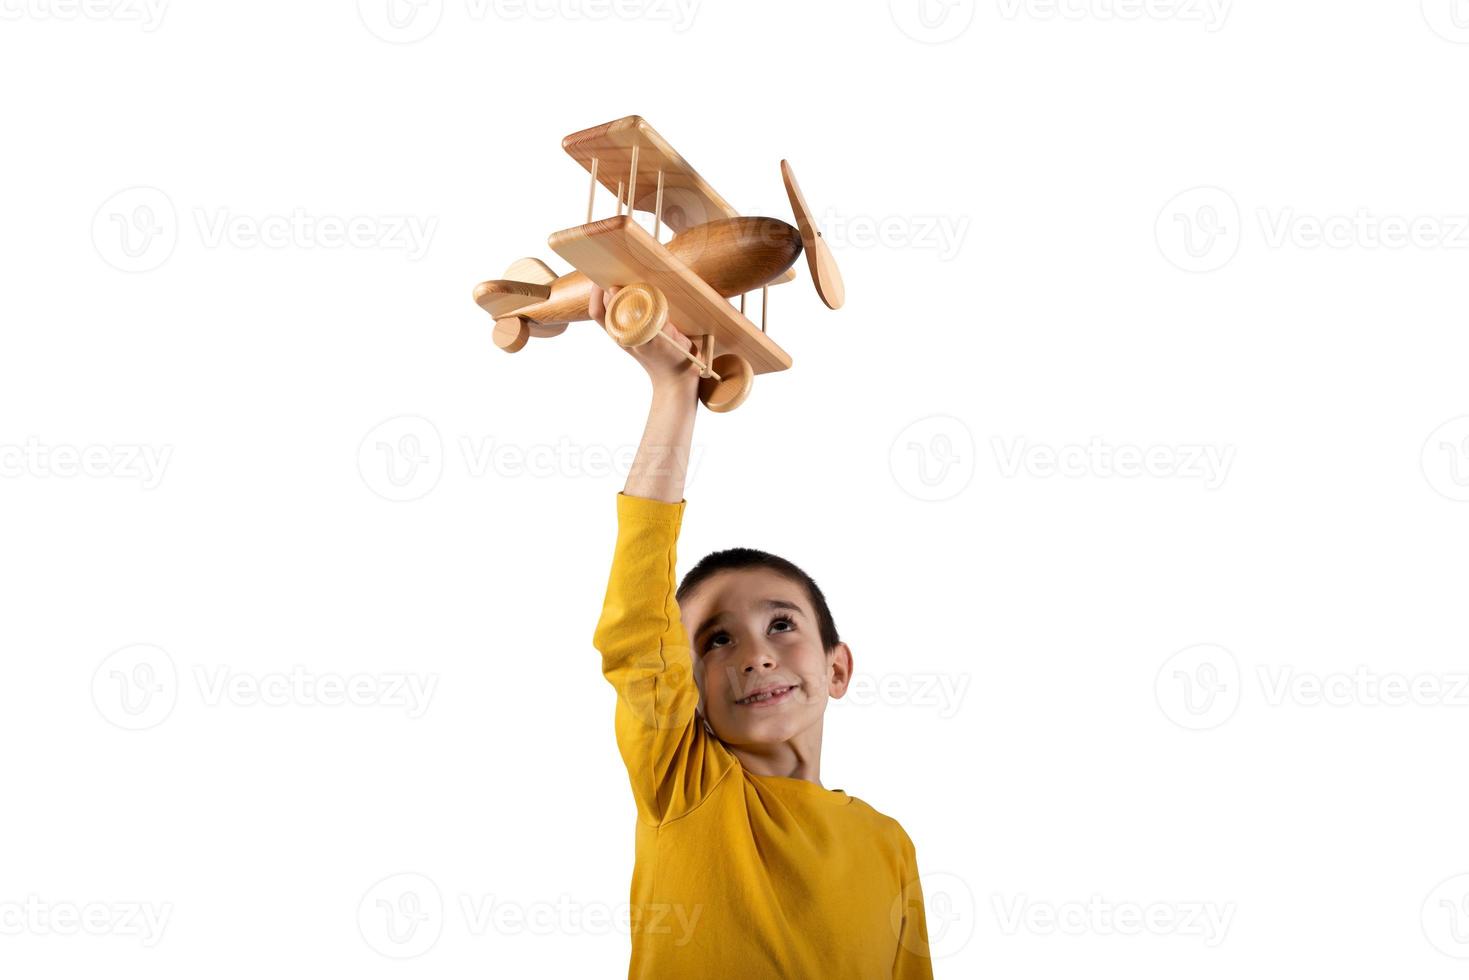 niño obras de teatro con un de madera juguete avión. aislado en blanco antecedentes foto